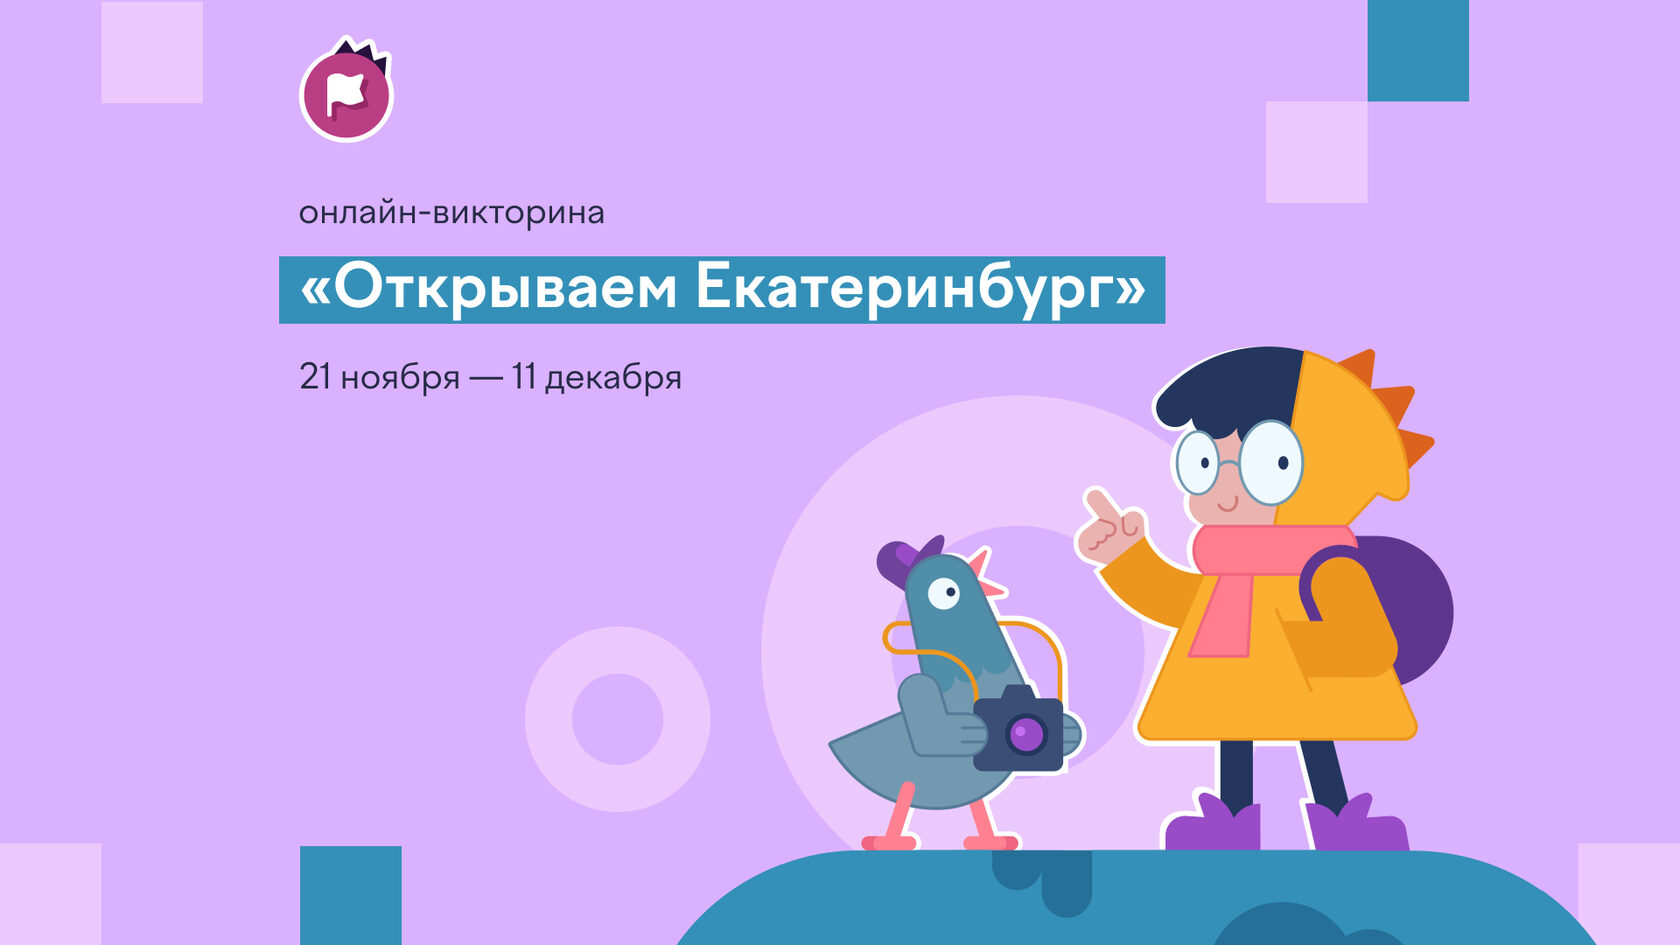 Школьников Белгородской области приглашают к участию во Всероссийской онлайн-викторине «Открываем Екатеринбург».